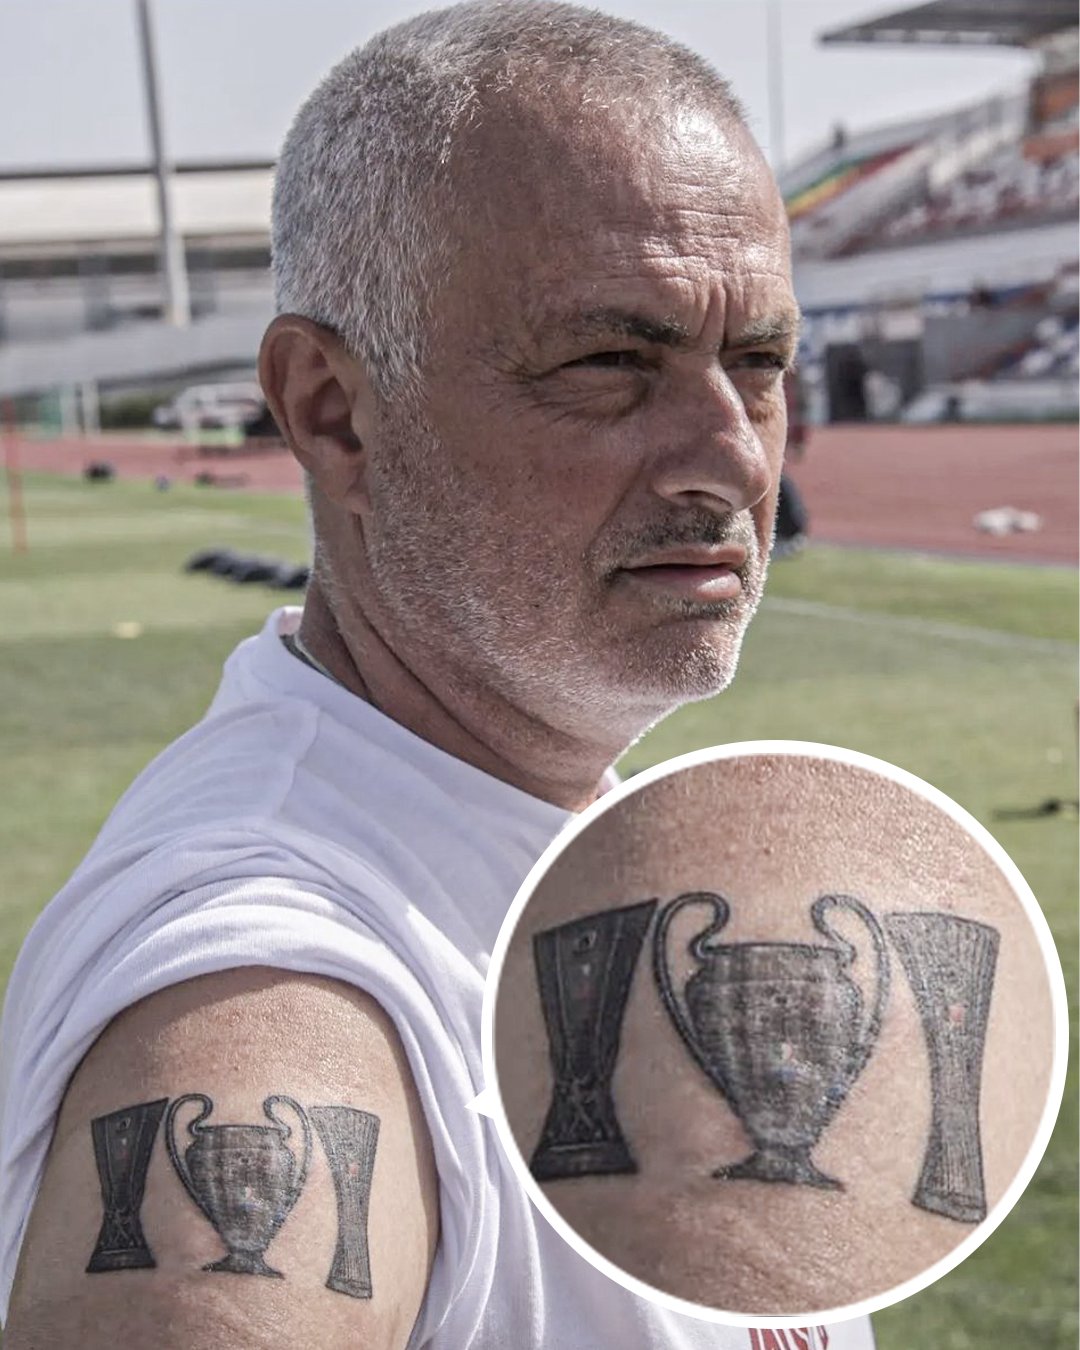 Mourinho và hình xăm châu Âu: Cựu huấn luyện viên Manchester United, Jose Mourinho, sở hữu một bộ sưu tập hình xăm đẳng cấp và đầy sức hút từ các nghệ sĩ xăm chuyên nghiệp. Không chỉ đơn thuần là một tín đồ của nghệ thuật hình xăm, ông còn là một nguồn cảm hứng lớn cho những ai yêu mến hình xăm và bóng đá.